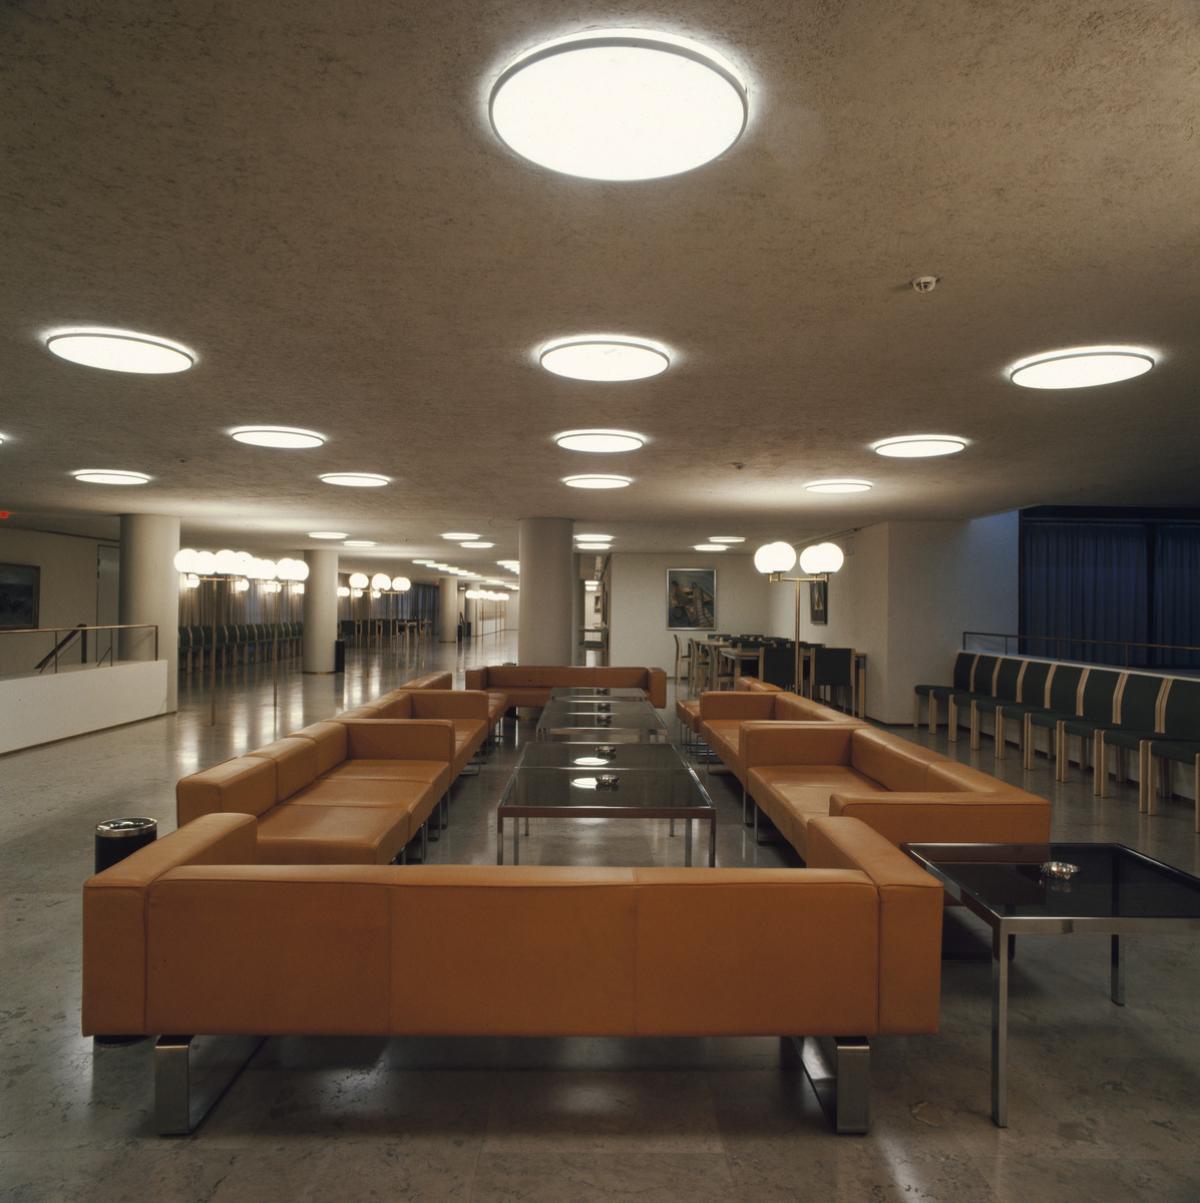 Kuva Helsingin kaupungintalon käytävältä. Tilaa hallitsee suuri, tummanruskea sohvaryhmä. Käytävän kattoon on upotettu pyöreitä valaisimia.